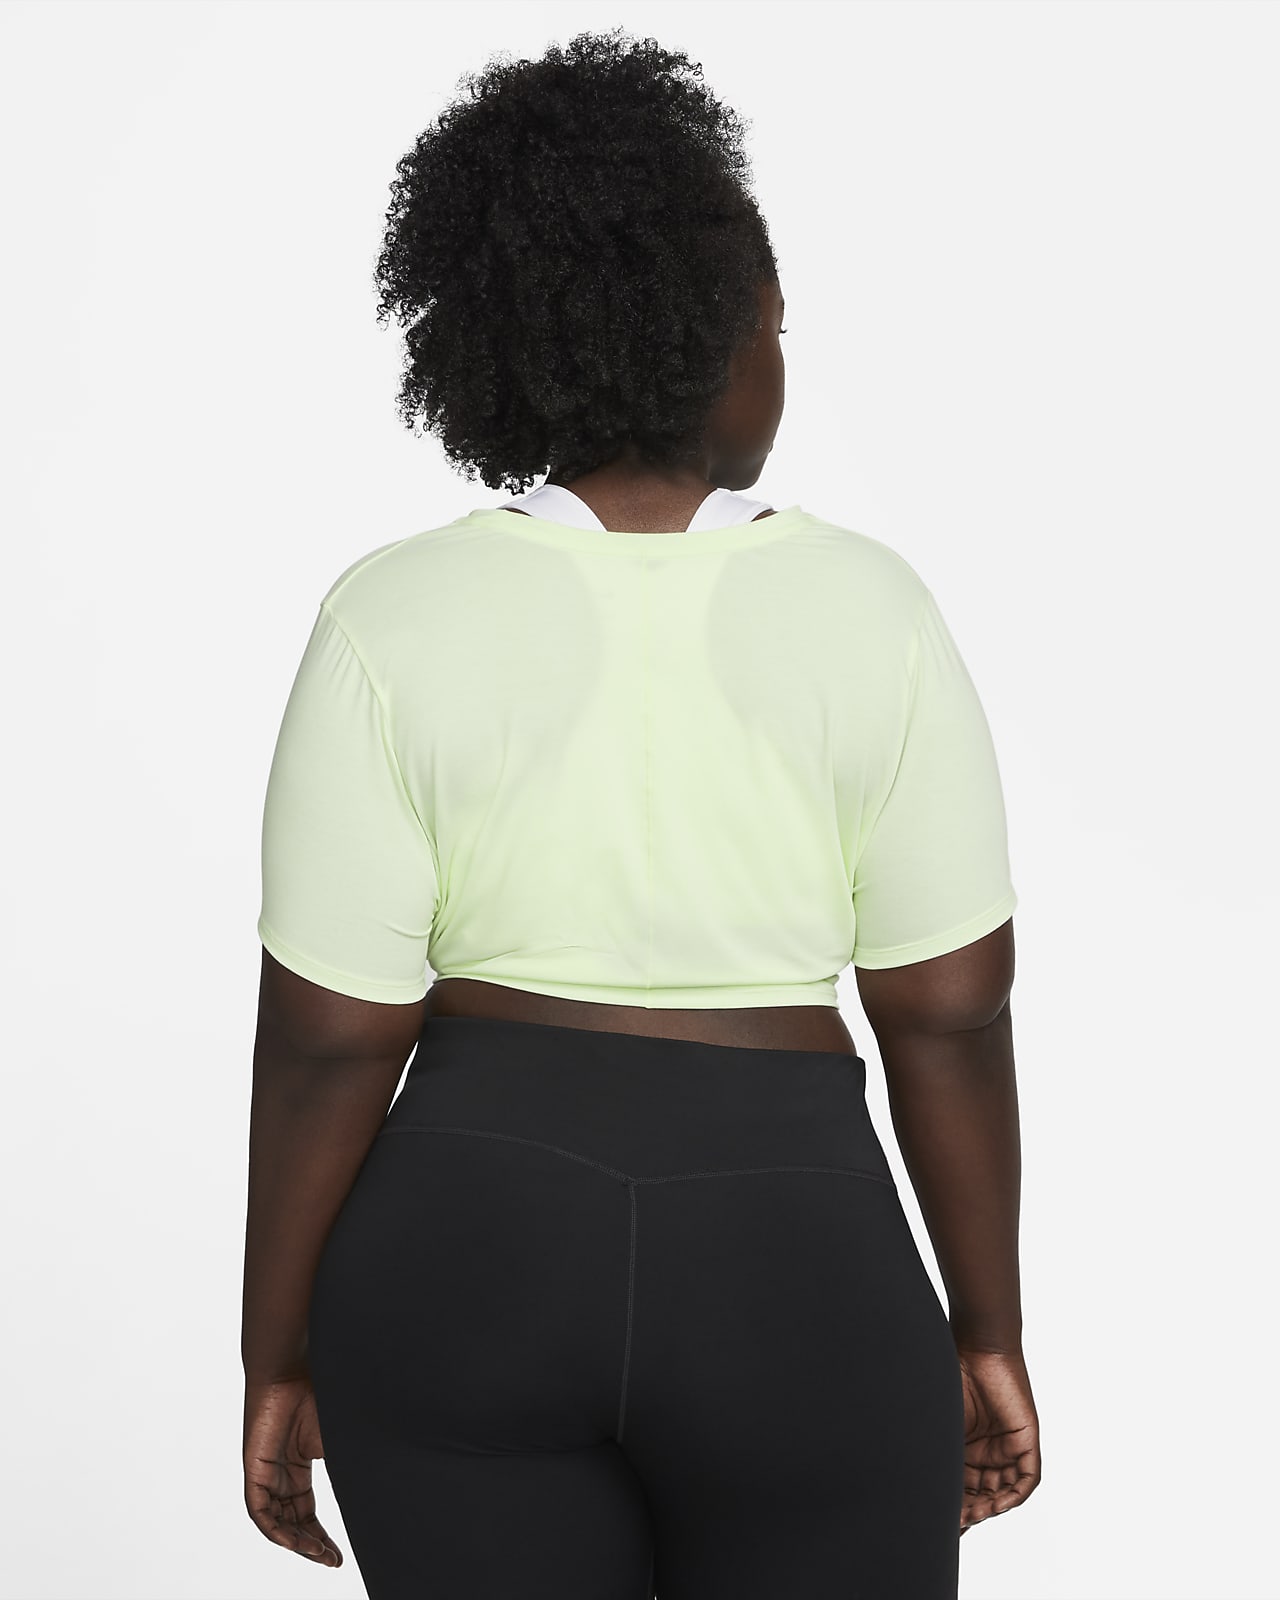 Nike Dri-FIT One Luxe Women's Standard Fit Short-Sleeve Twist Top (Plus  Size)